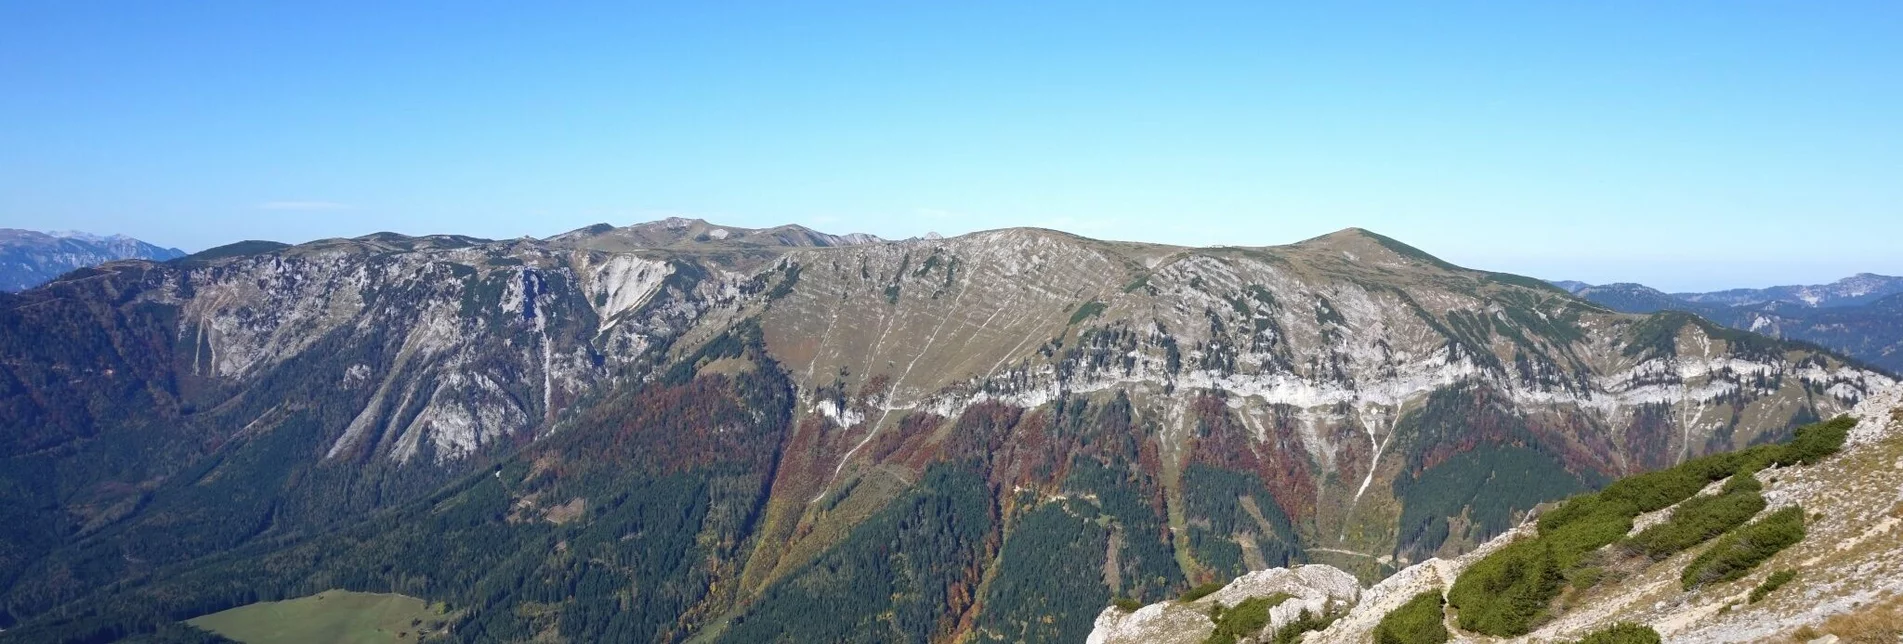 Klettersteig Große Reißtalersteig - Runde auf die Rax im Naturpark Mürzer Oberland - Touren-Impression #1 | © Naturpark Mürzer Oberland